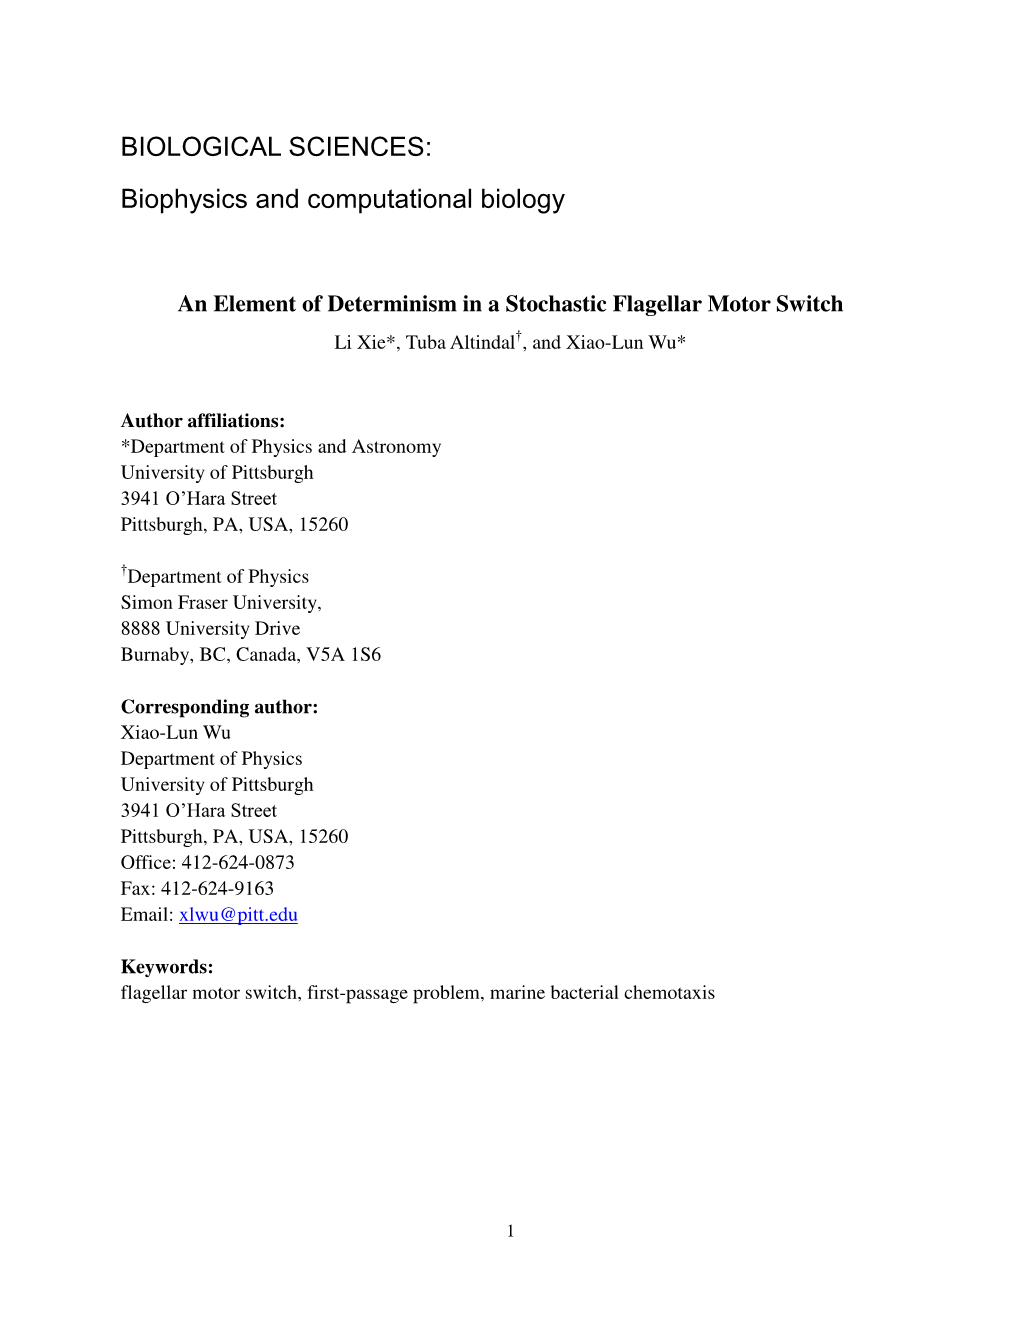 Biophysics and Computational Biology